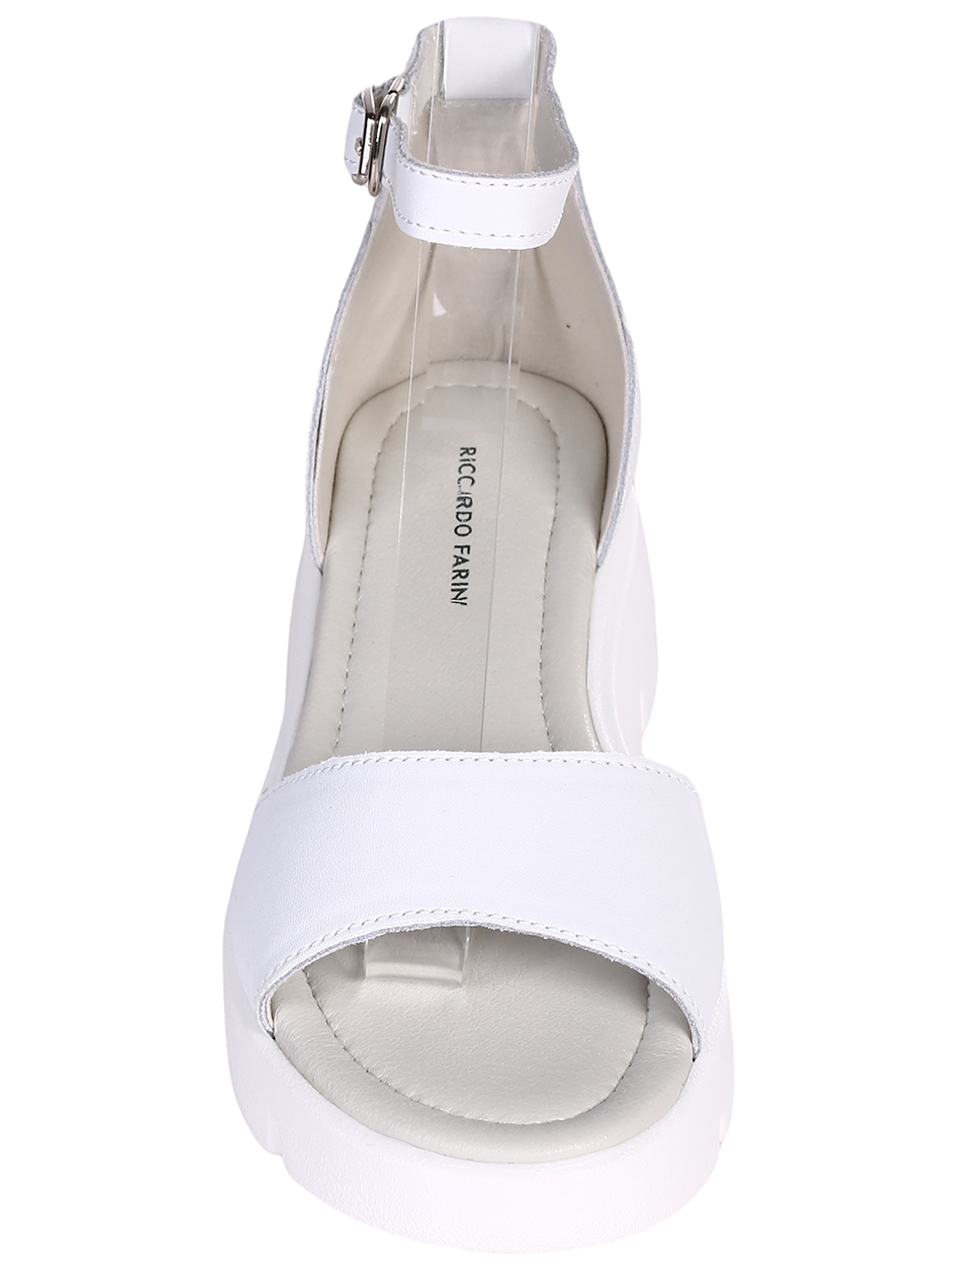 Ежедневни дамски сандали от естествена кожа в бяло 4AF-23164 white